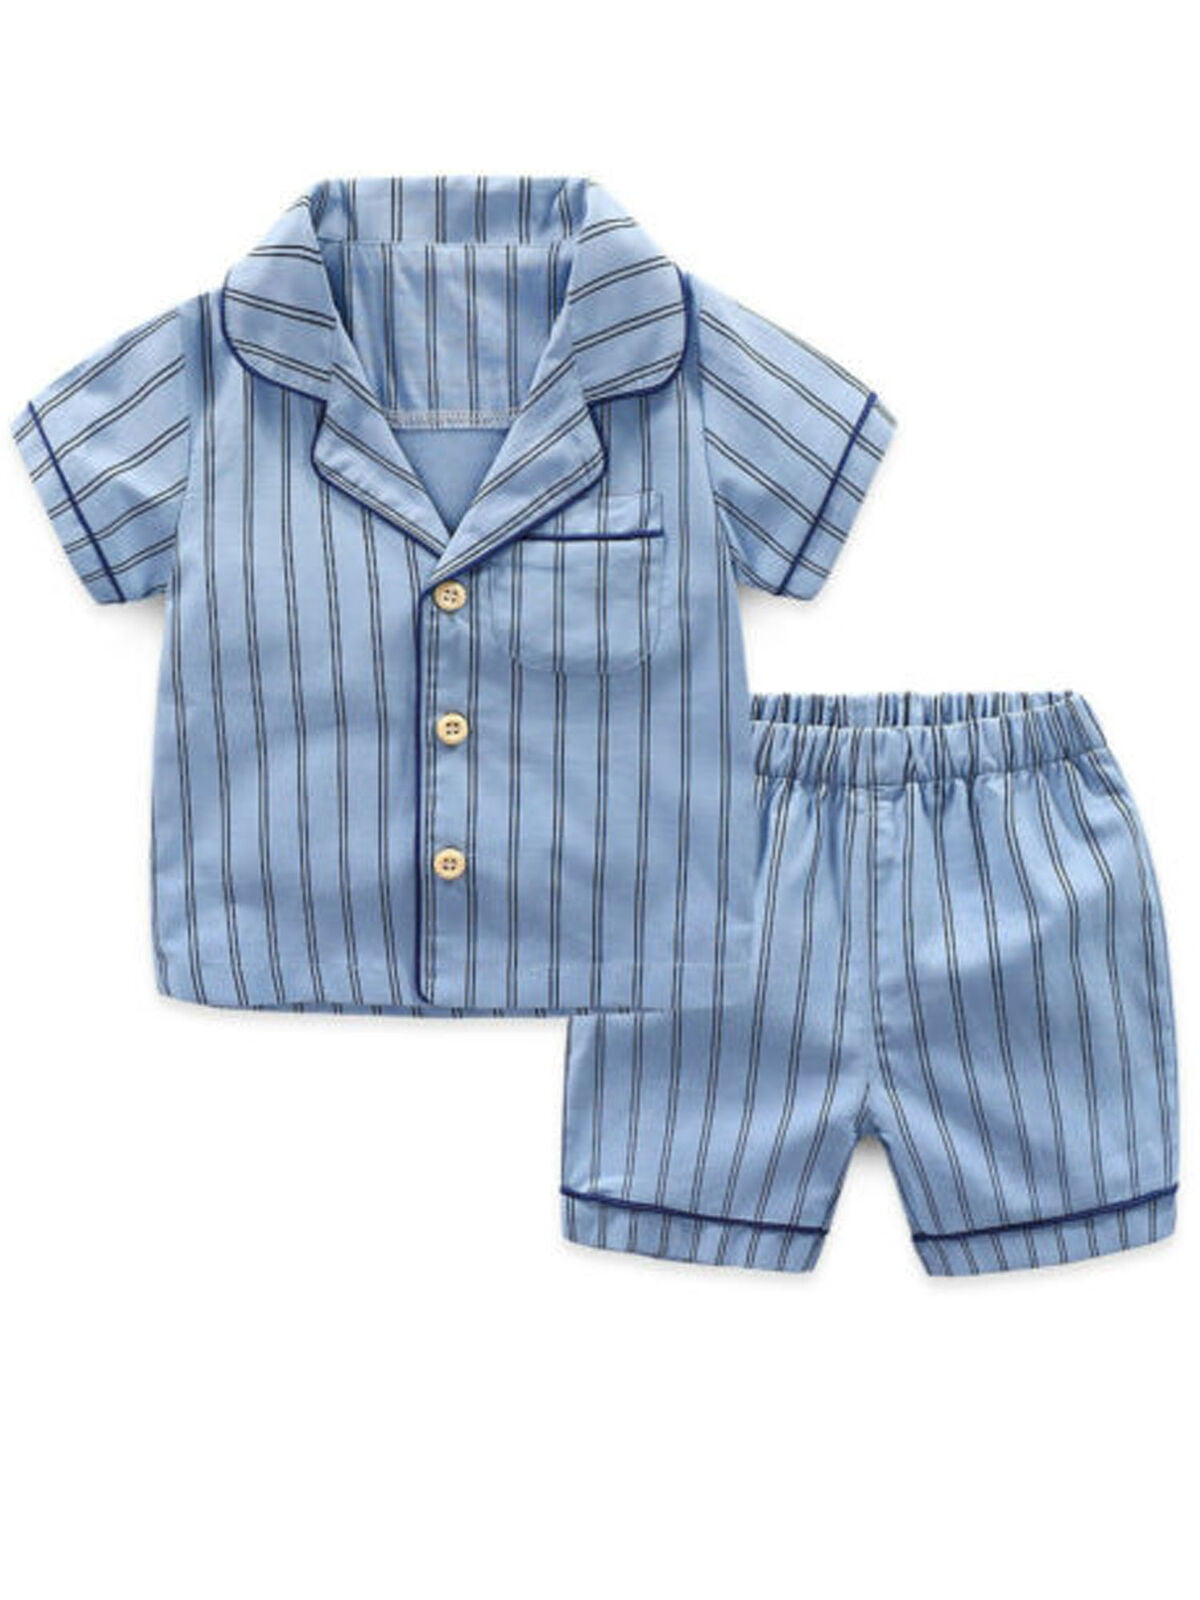 Focusnorm Focusnorm Baby Boys Girls Summer Cotoon Short Button Striped Pajamas Outfit Set Walmart Com Walmart Com